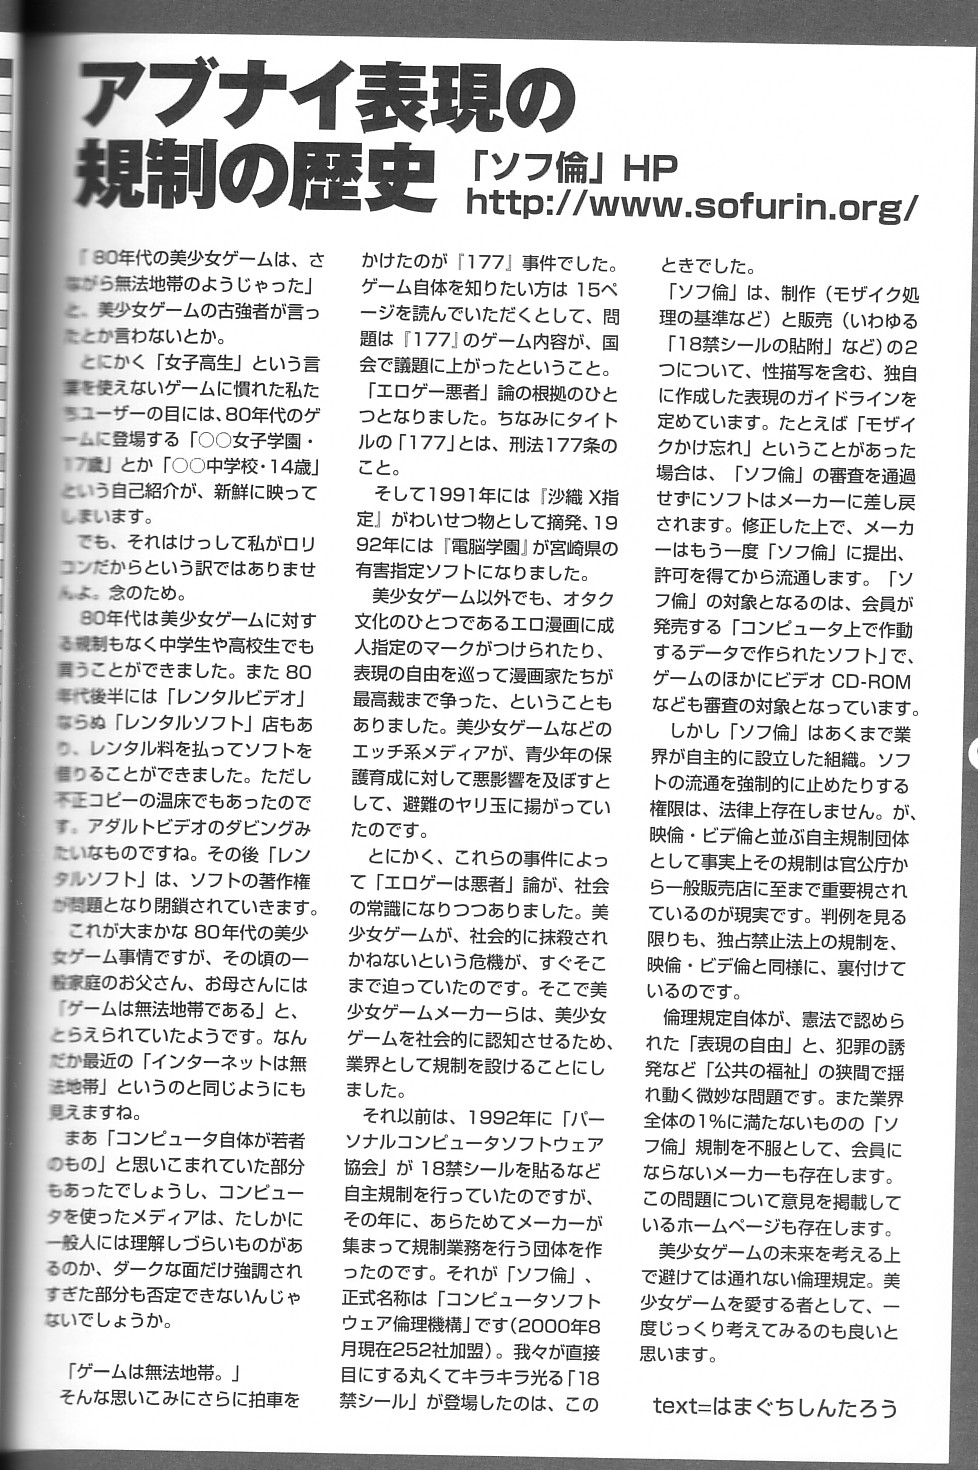 [大図鑑] パソコン美少女ゲーム歴史大全1982-2000